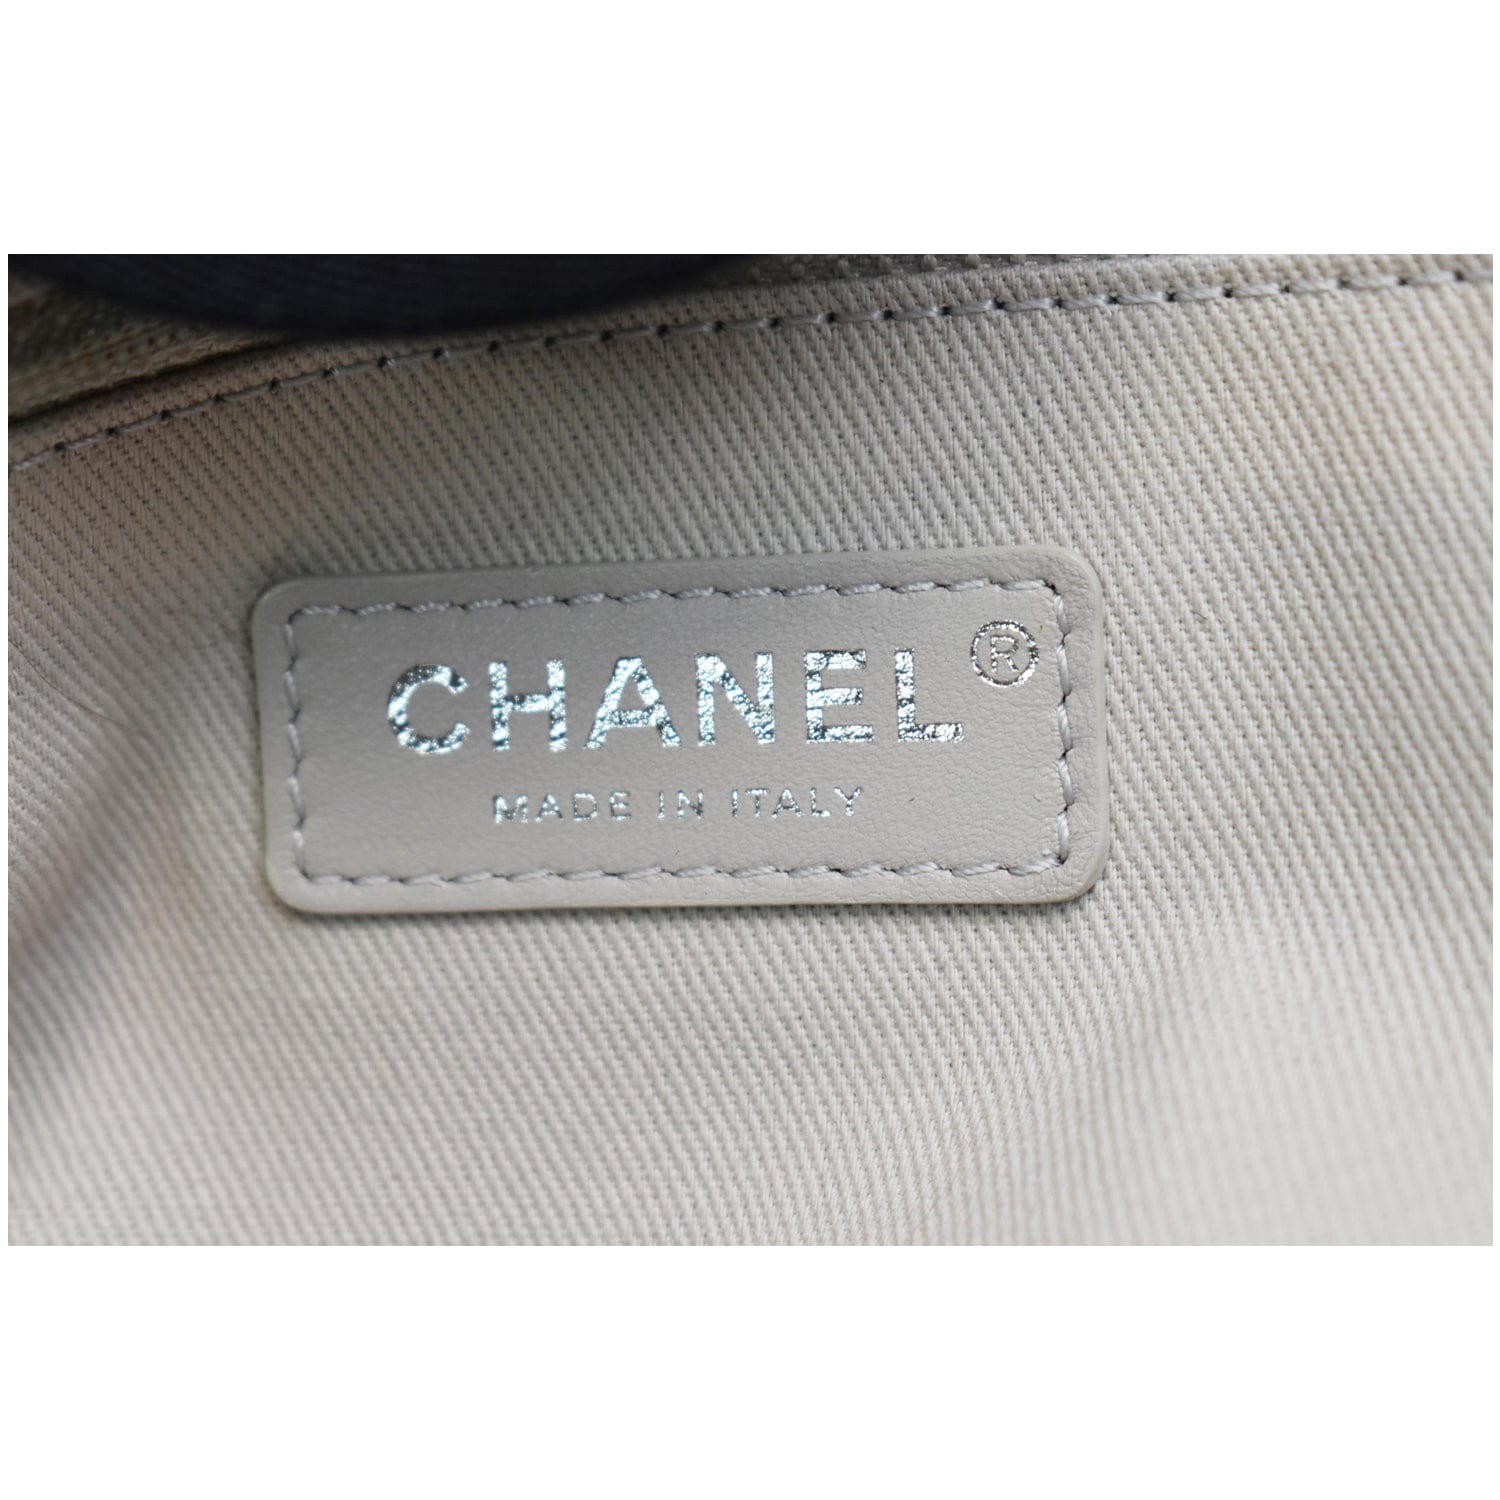 Deauville tote Chanel Grey in Wicker - 38908849